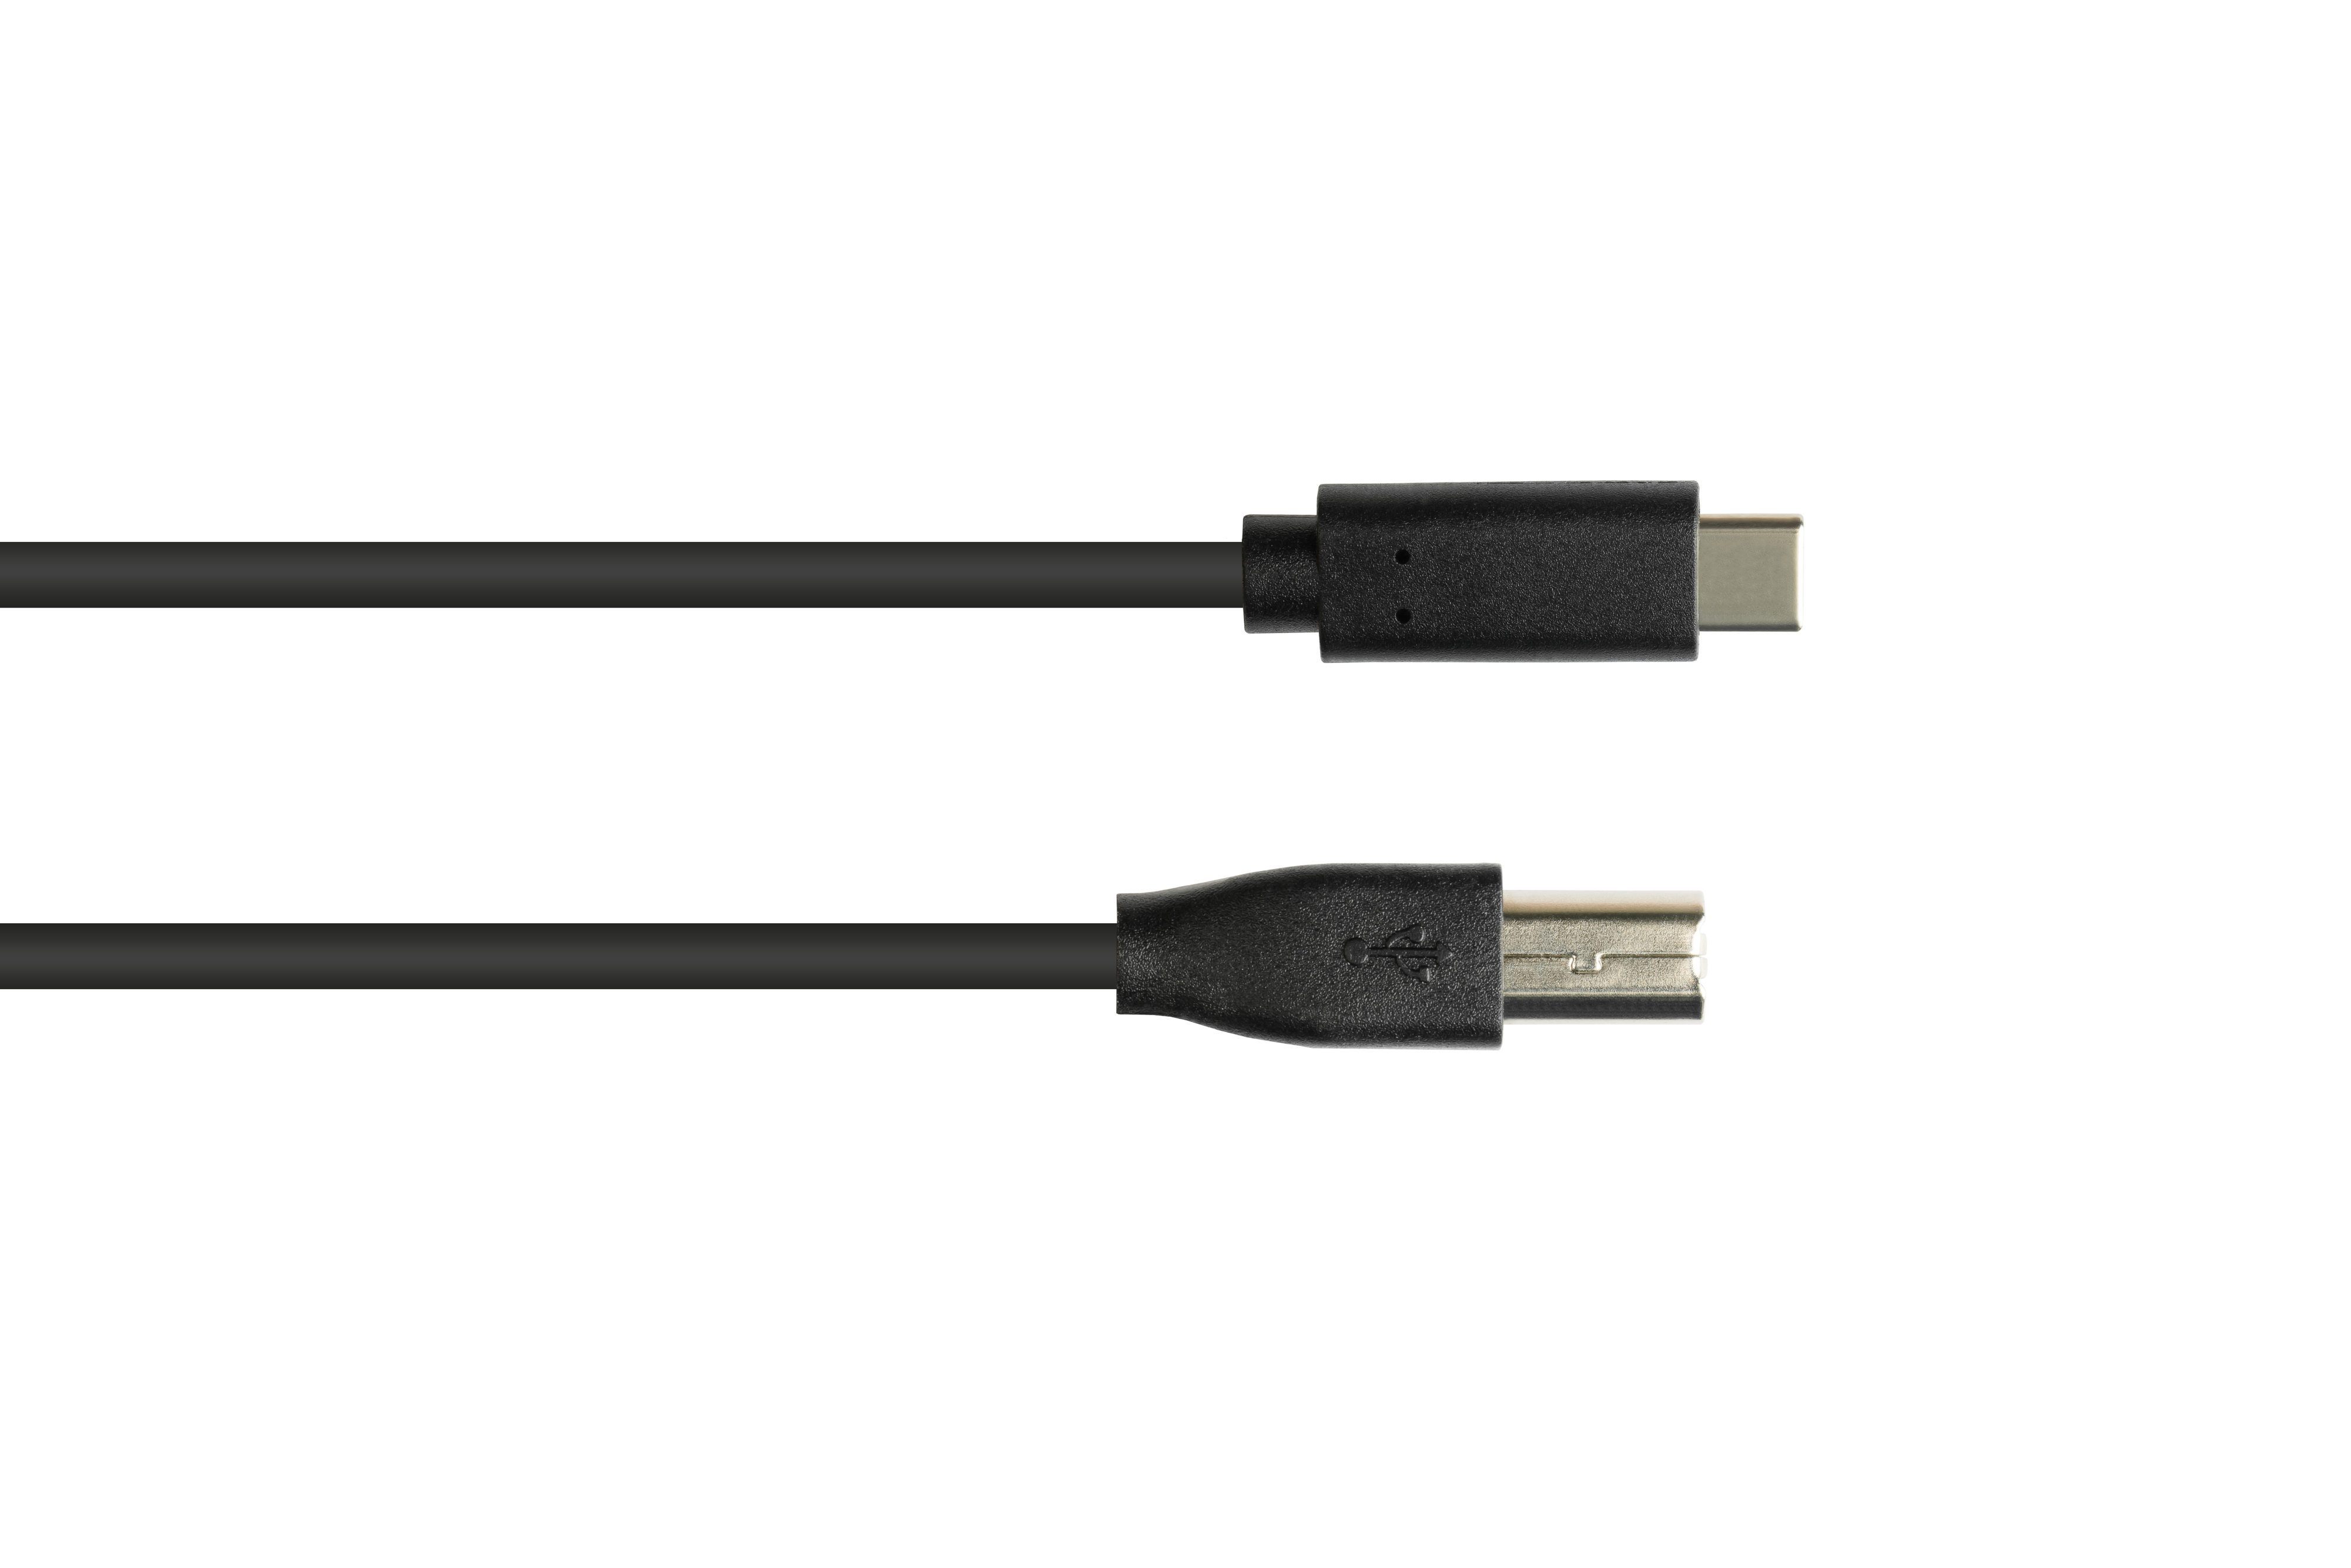 Stecker CU, an USB USB-C™ Stecker, Anschlusskabel 2.0 schwarz 2.0, B USB KABELMEISTER